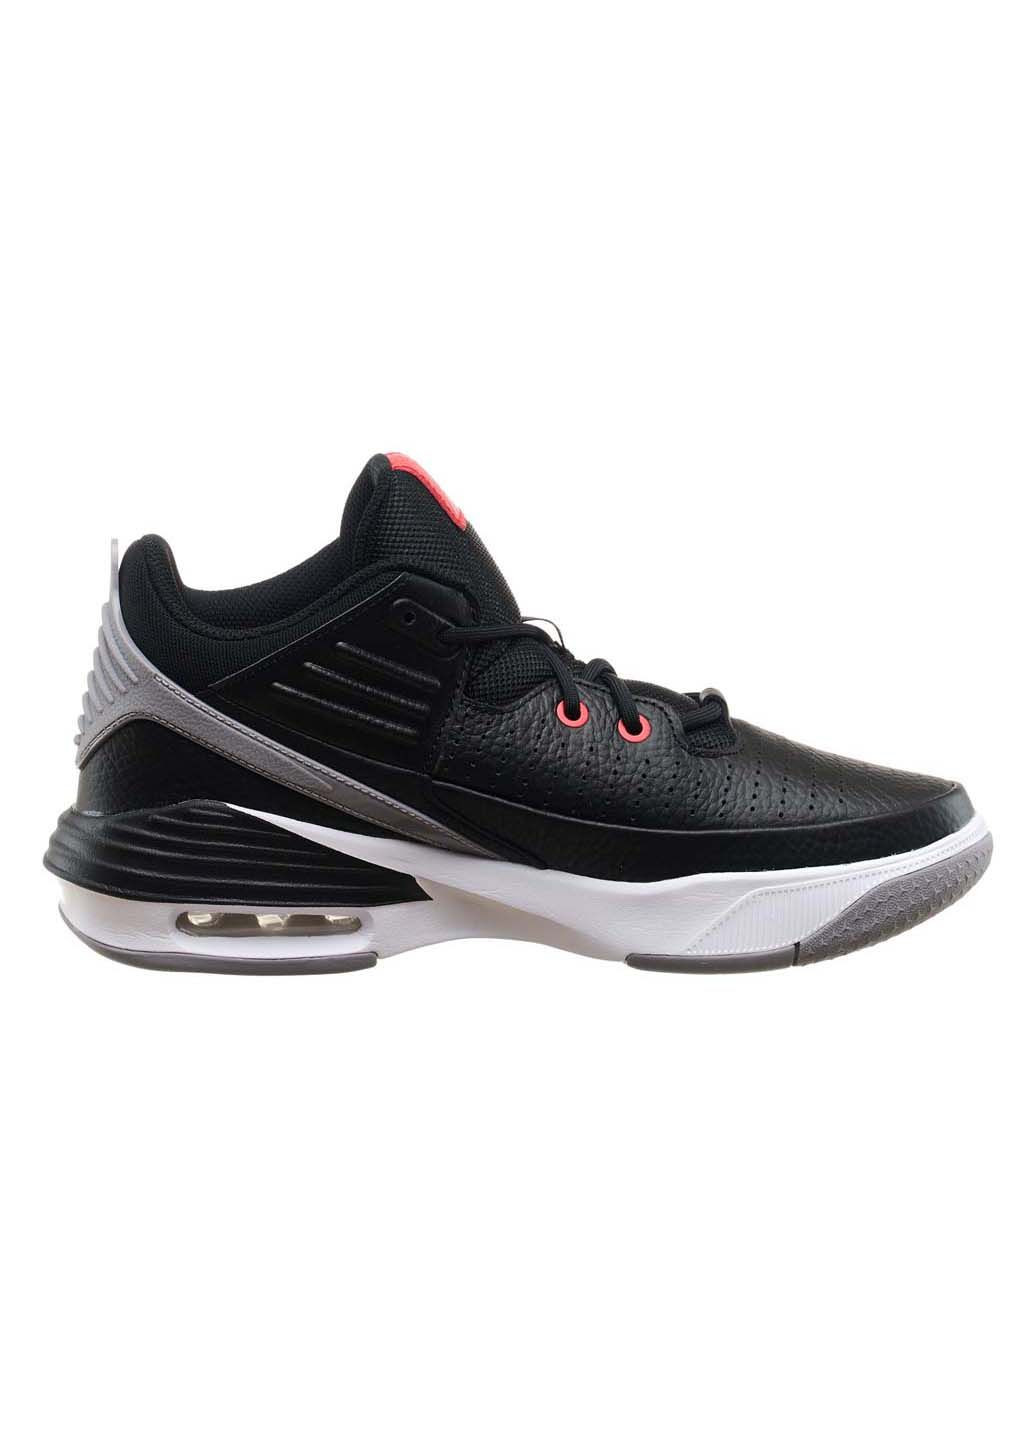 Черные демисезонные кроссовки мужские max aura 5 Jordan